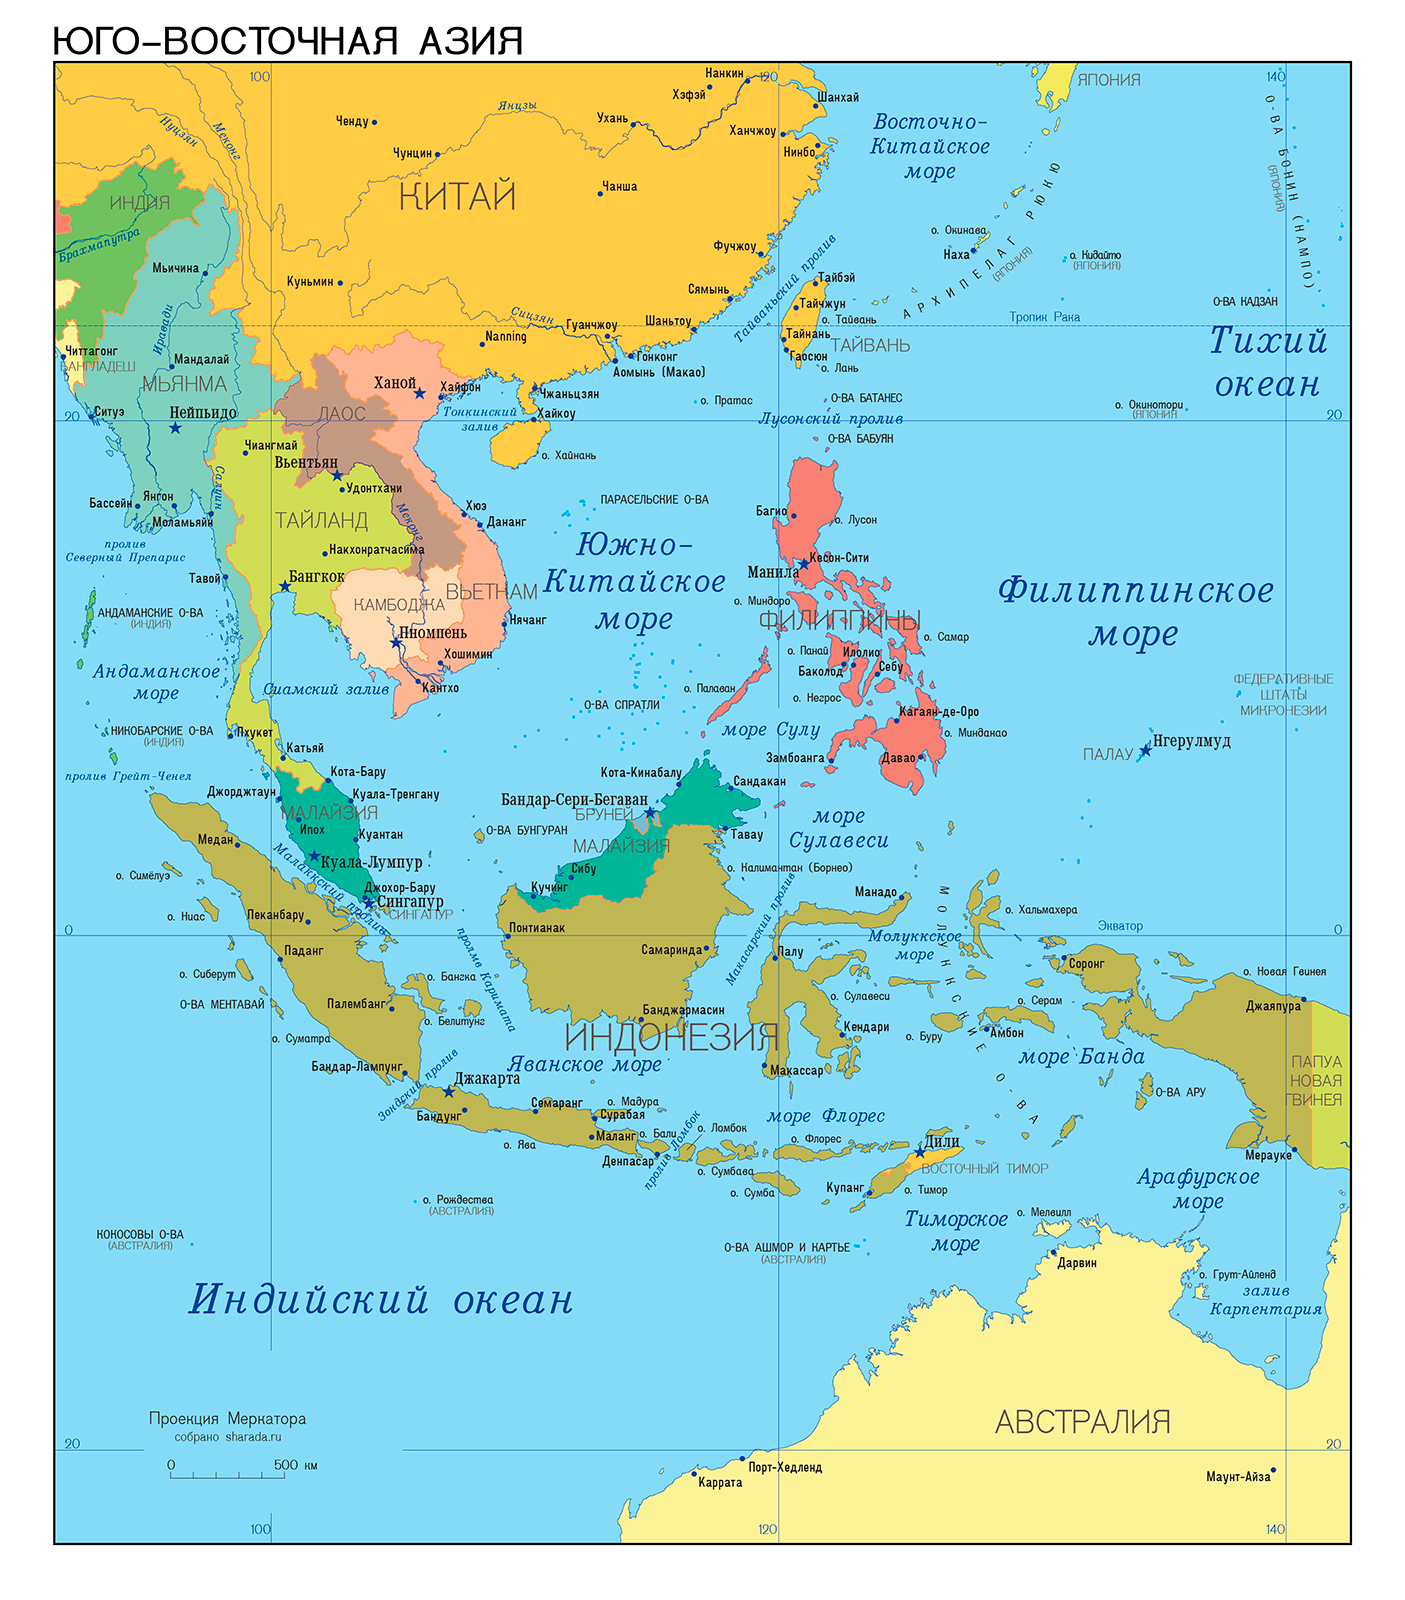 Страны находящиеся в восточной азии. Государства Юго Восточной Азии на карте. Политическая карта Юго-Восточной Азии. Юго-Восточная Азия на карте. Карта Юго-Восточной Азии со странами.